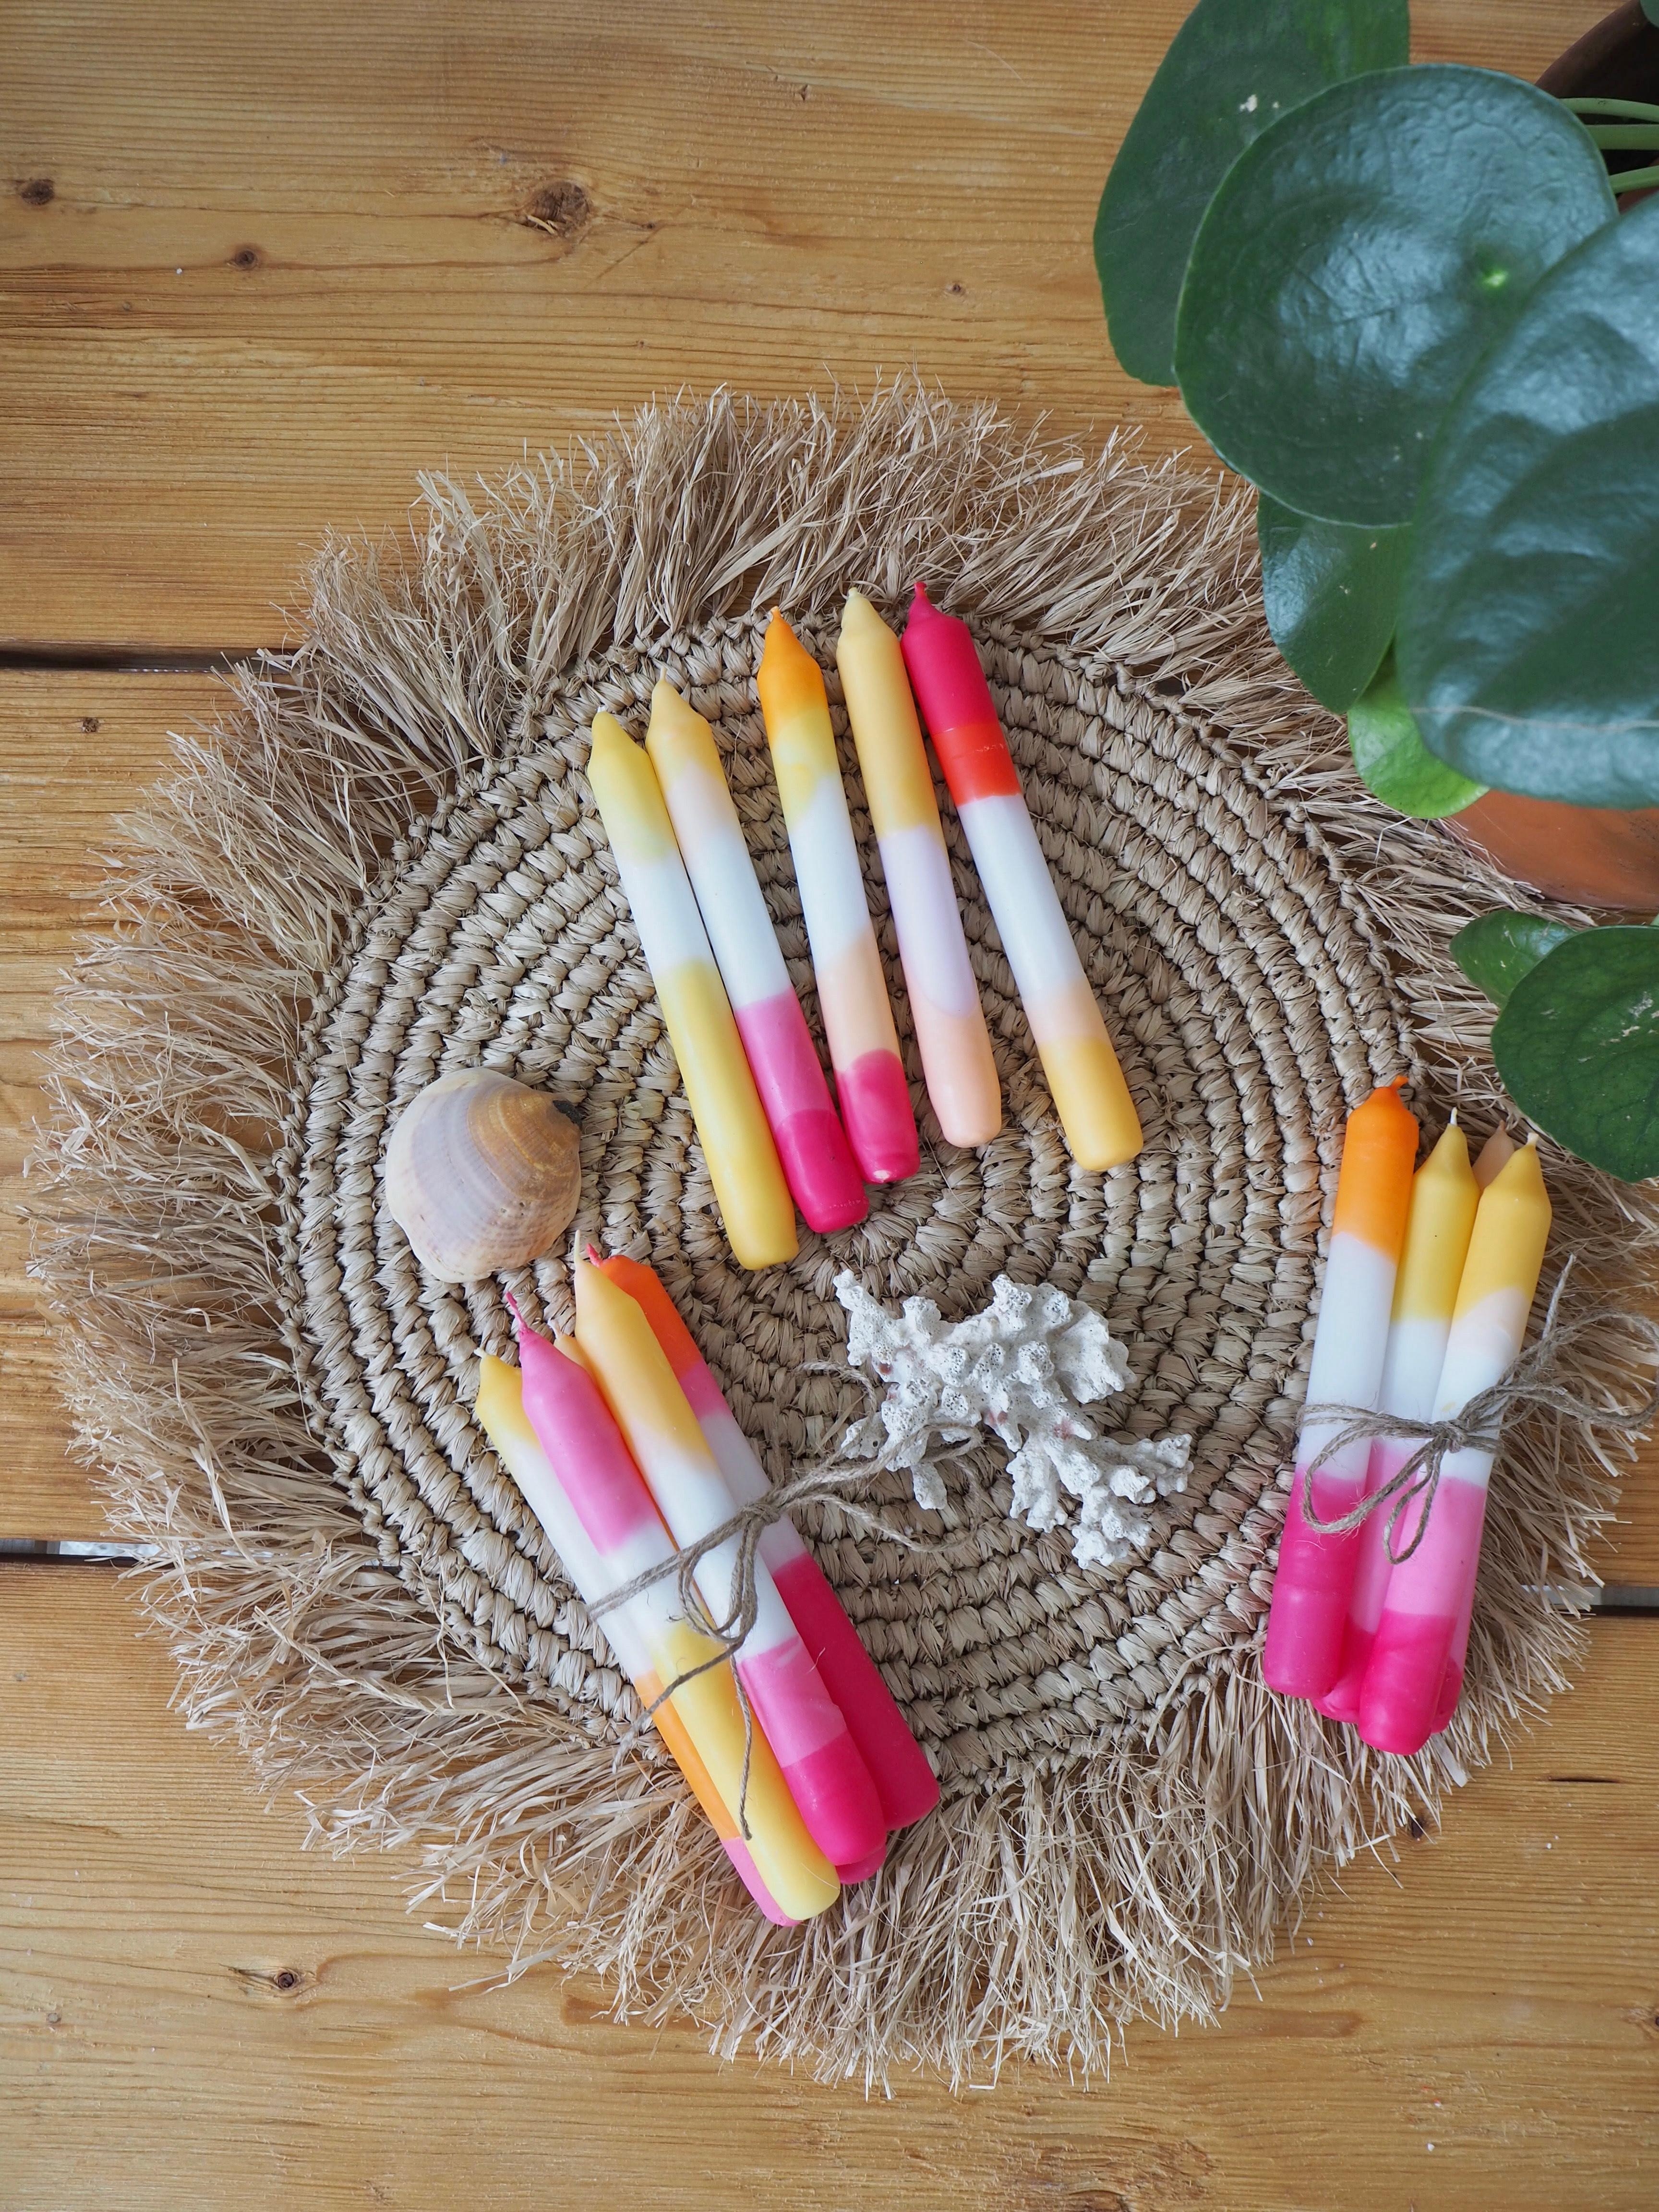 ☀️ Sommerliche Kerzen DIY ☀️ #selbstgemacht #kerzen #sommerlicheDeko #summervibes #diy